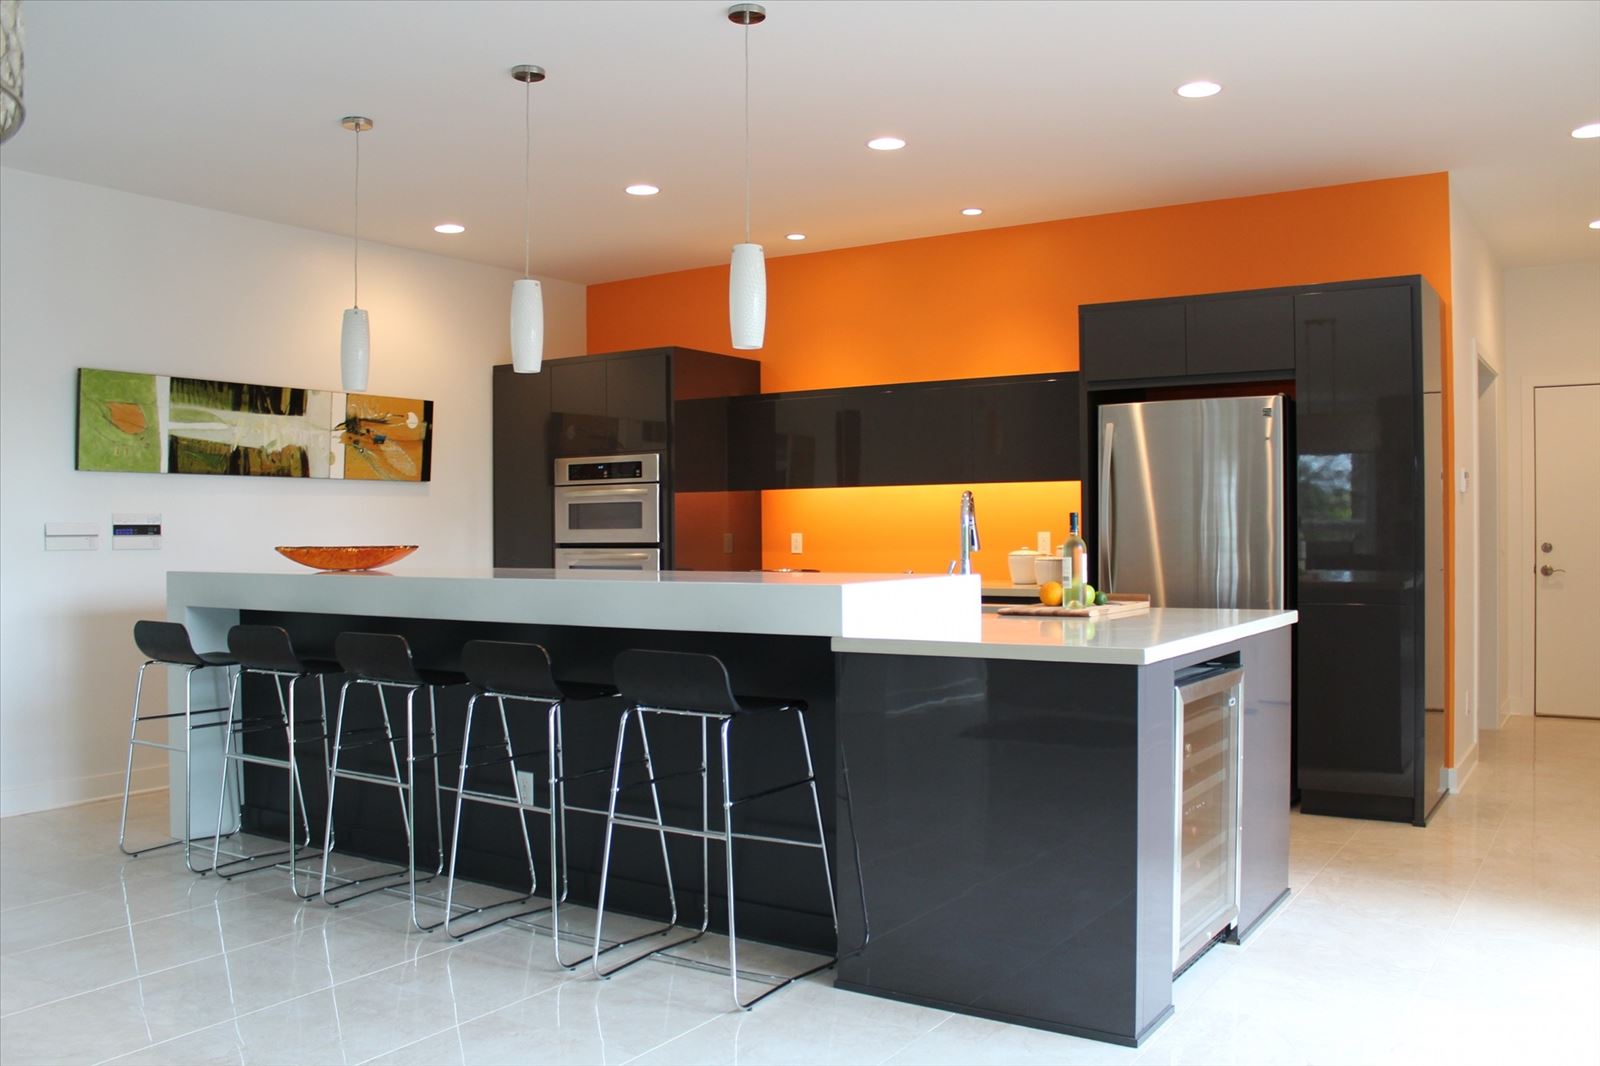 the kitchen design center orange ct